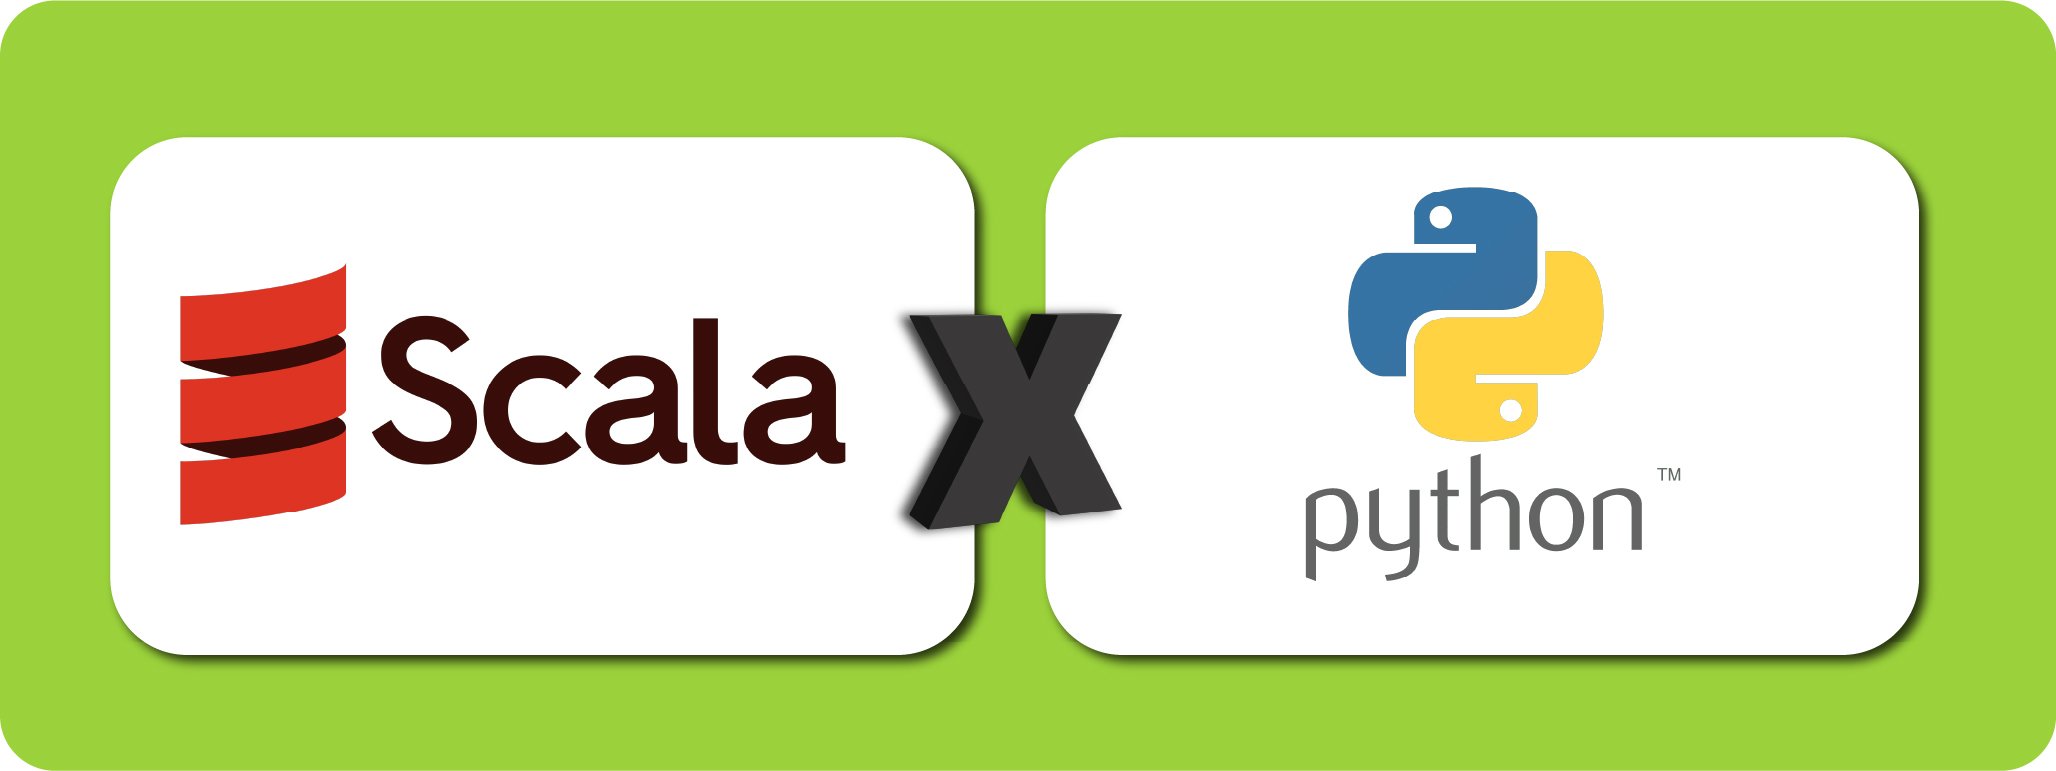 Imagem colorida, representando a comparação de duas linguagens, com o logo e nome, da esquerda para direita, Scala e Python.